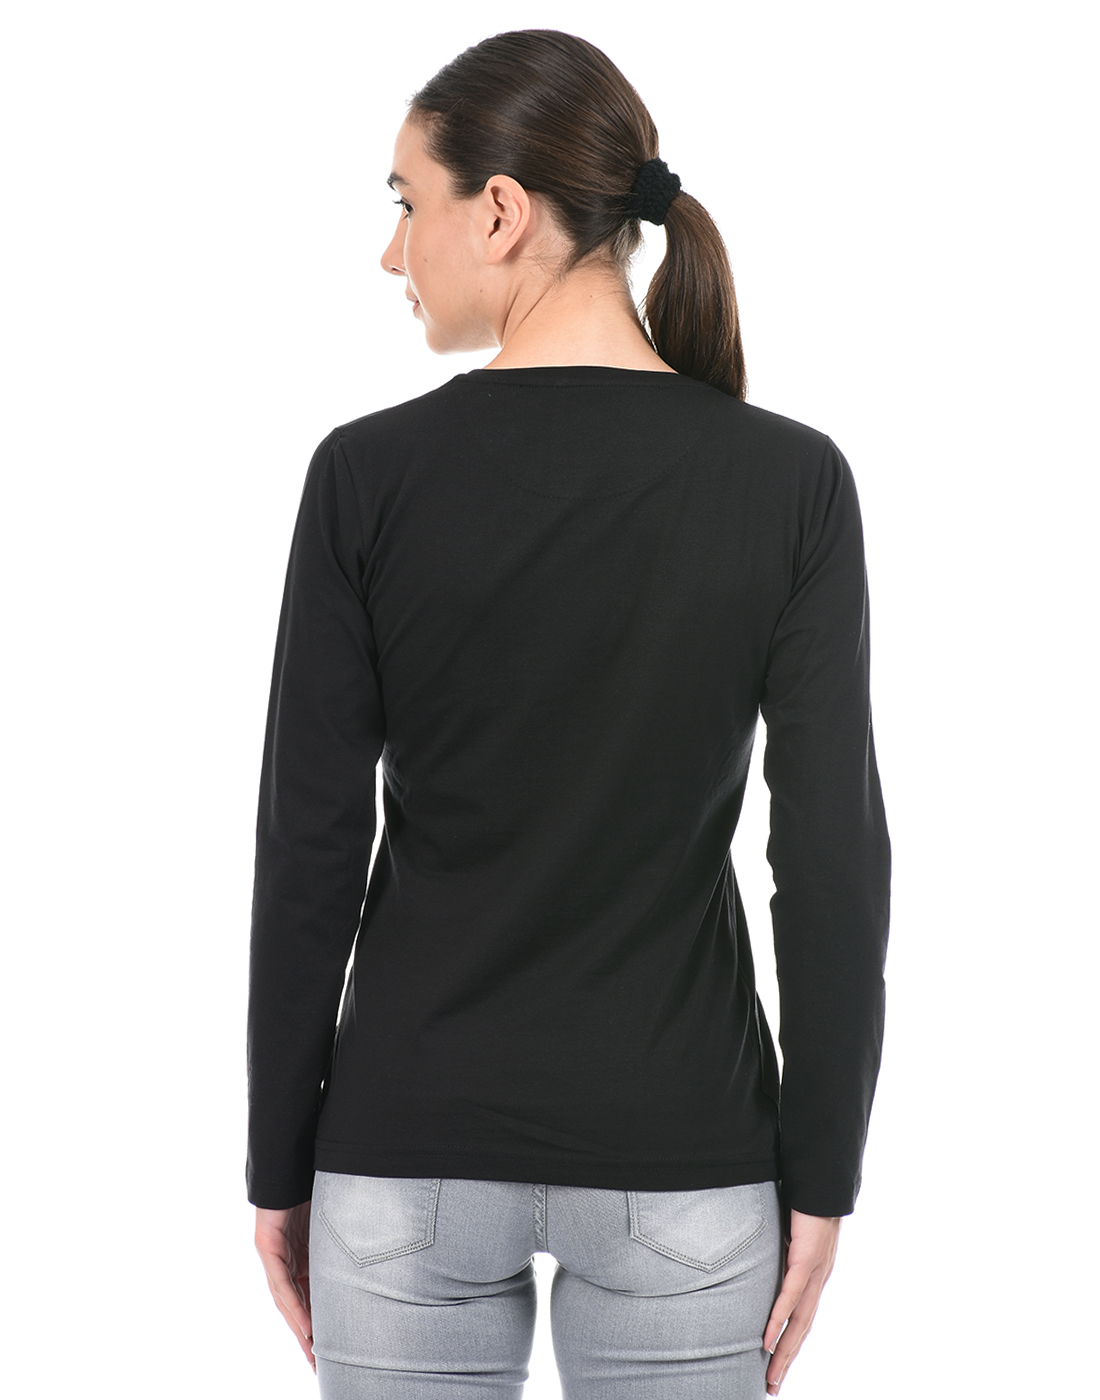 Cloak & Decker by Monte Carlo Women Solid Black T-Shirt